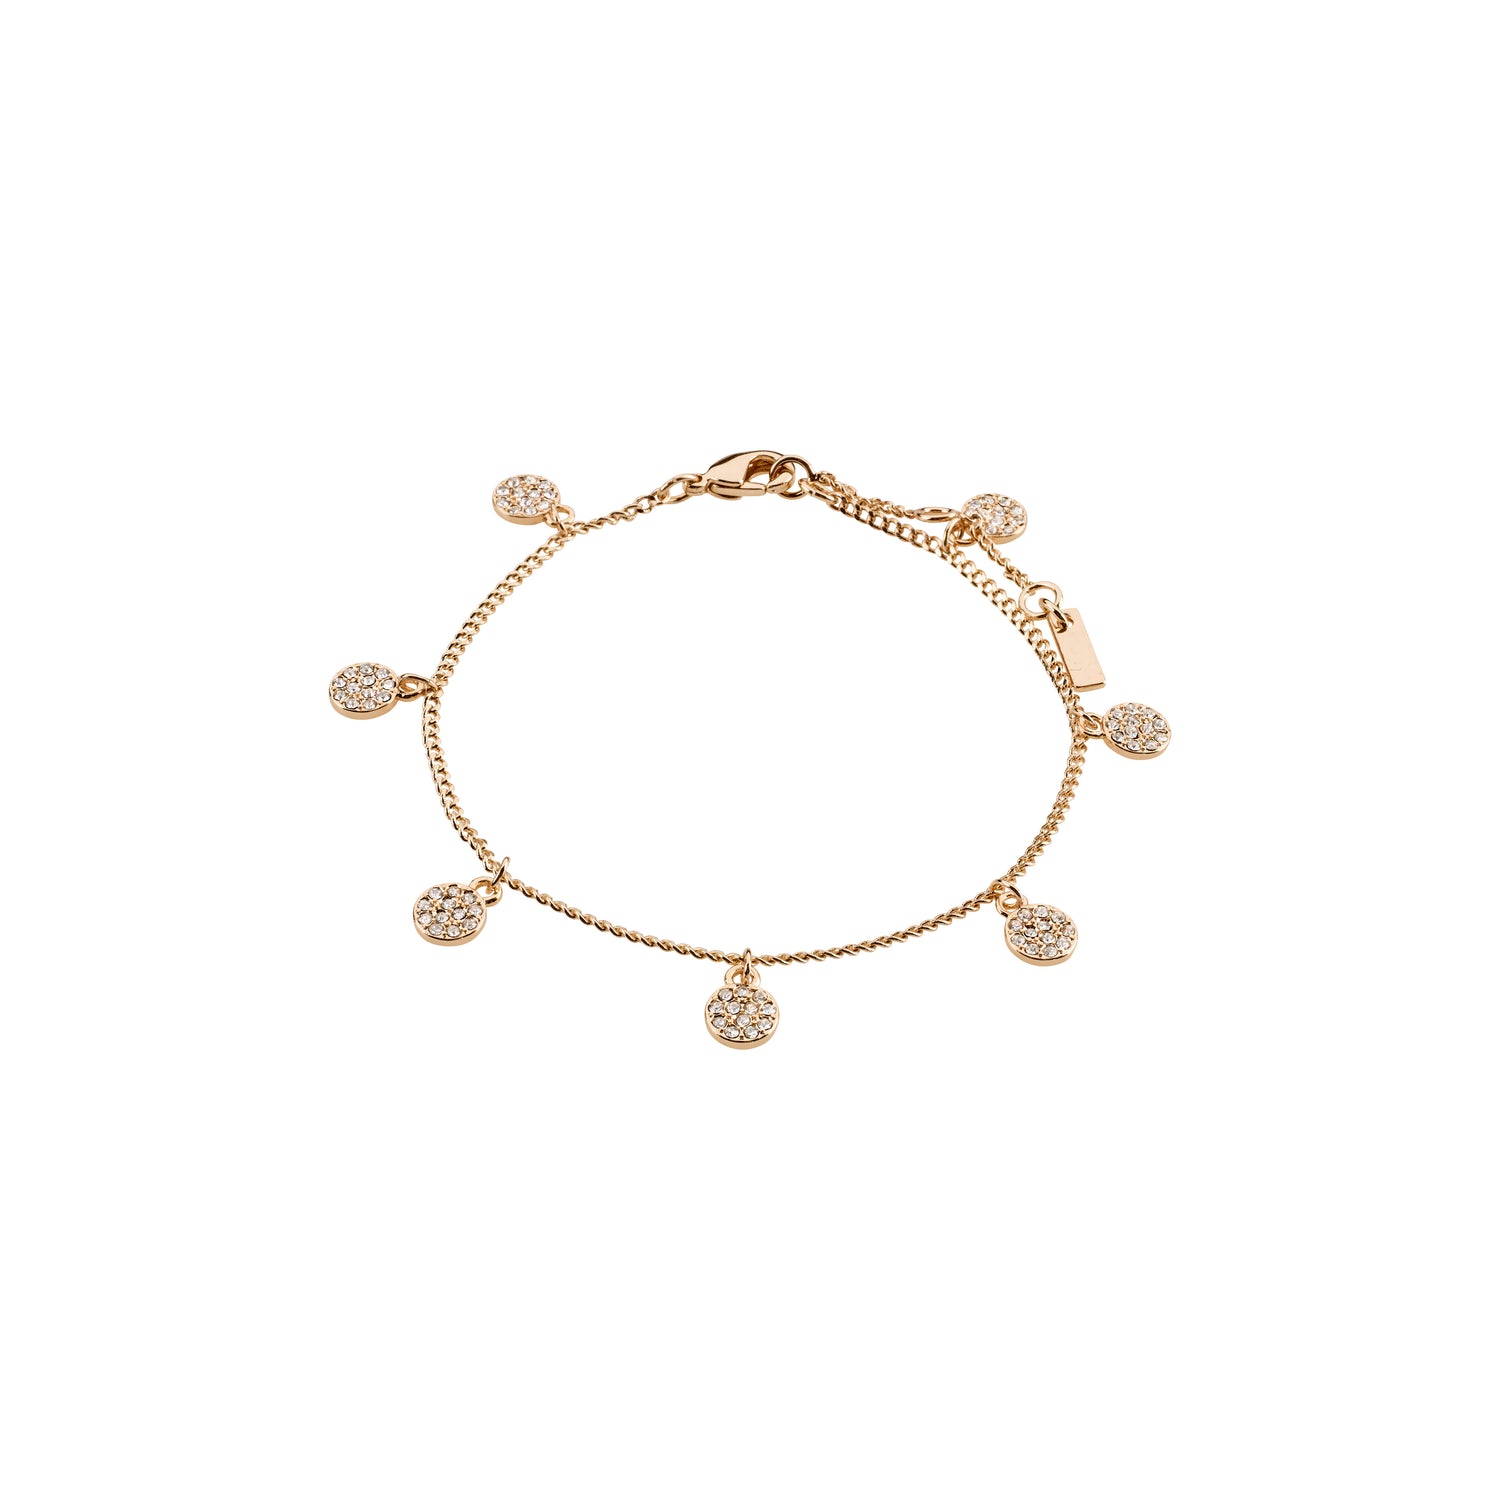 Rose gold plated bracelets